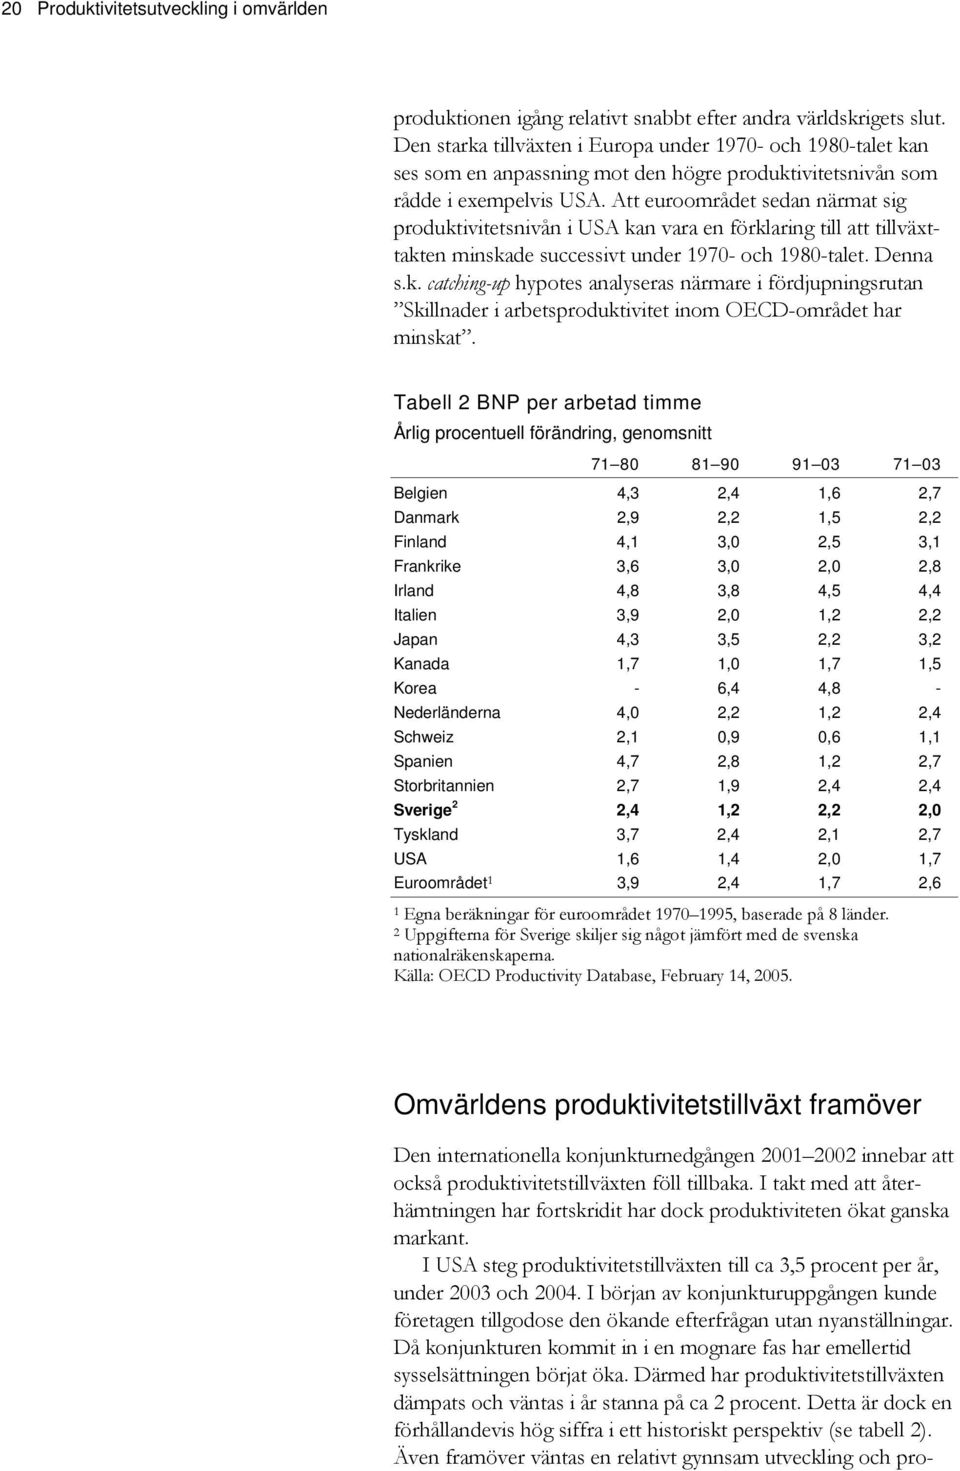 Att euroområdet sedan närmat sig produktivitetsnivån i USA kan vara en förklaring till att tillväxttakten minskade successivt under 197- och 198-talet. Denna s.k. catching-up hypotes analyseras närmare i fördjupningsrutan Skillnader i arbetsproduktivitet inom OECD-området har minskat.